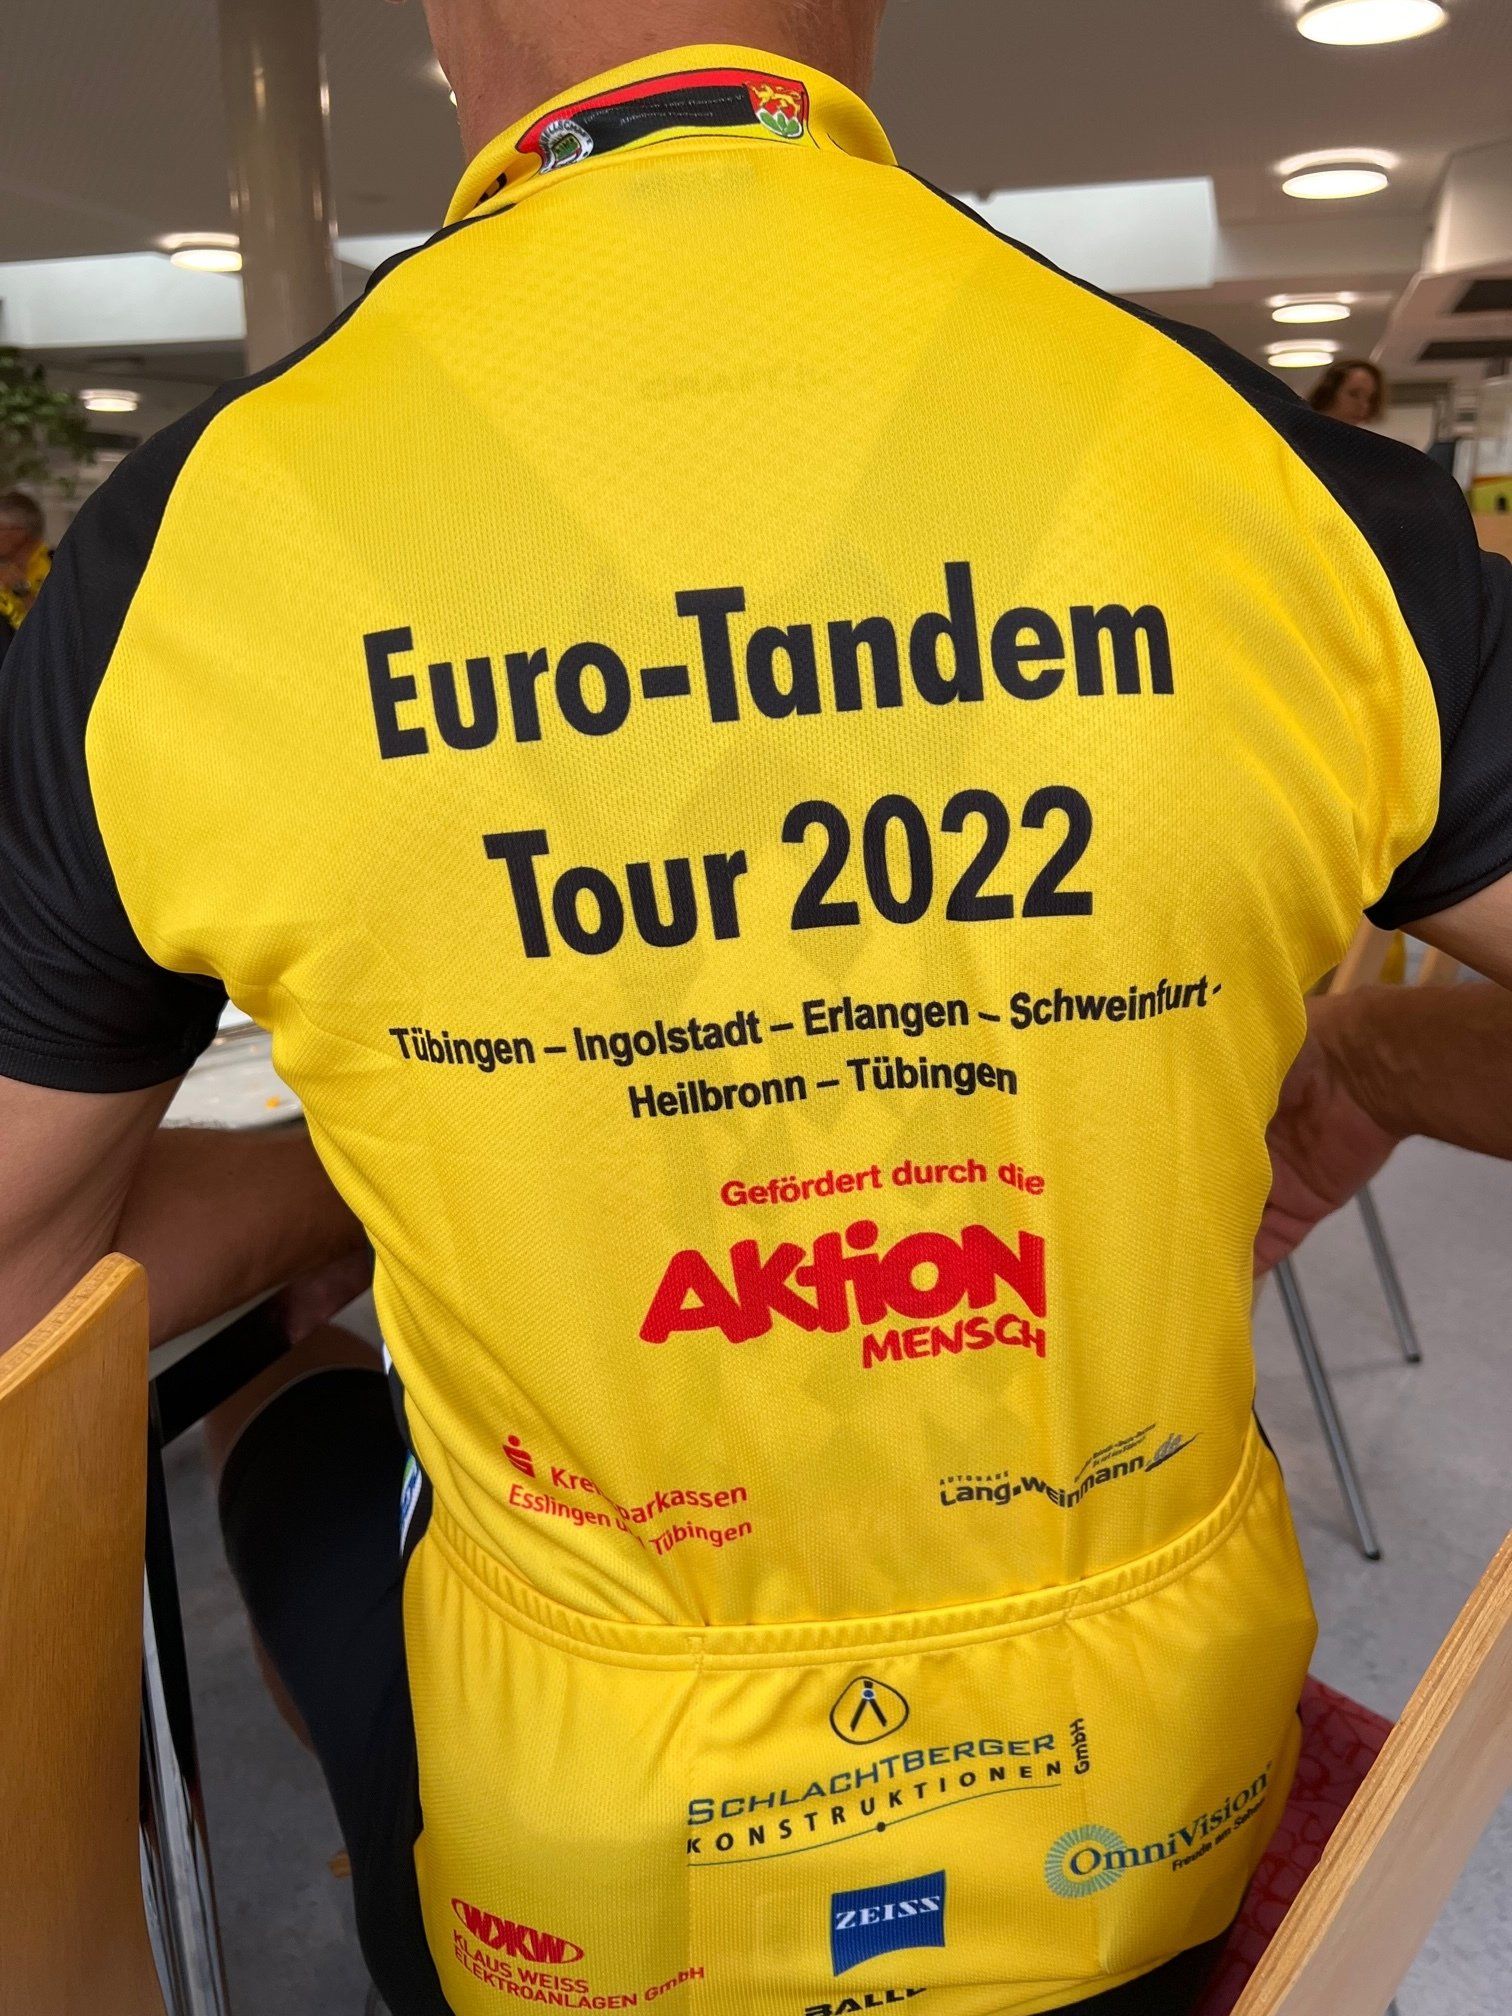 Euro Tanden Tour 2022 - Trikot